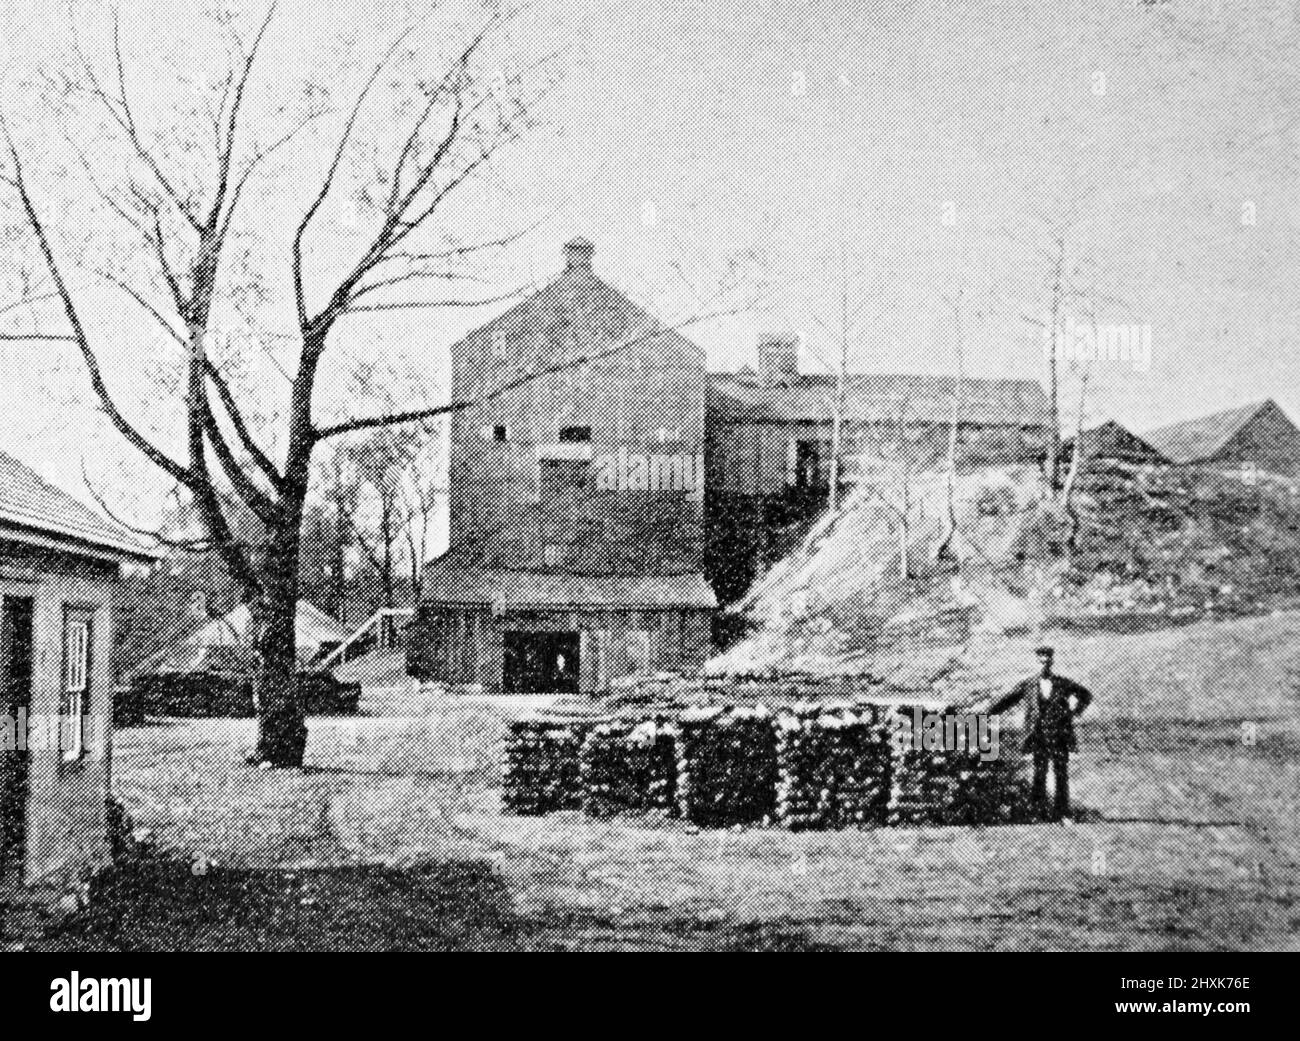 Una fornace di carbone del New England nel 1890s; fotografia in bianco e nero scattata intorno al 1890s Foto Stock